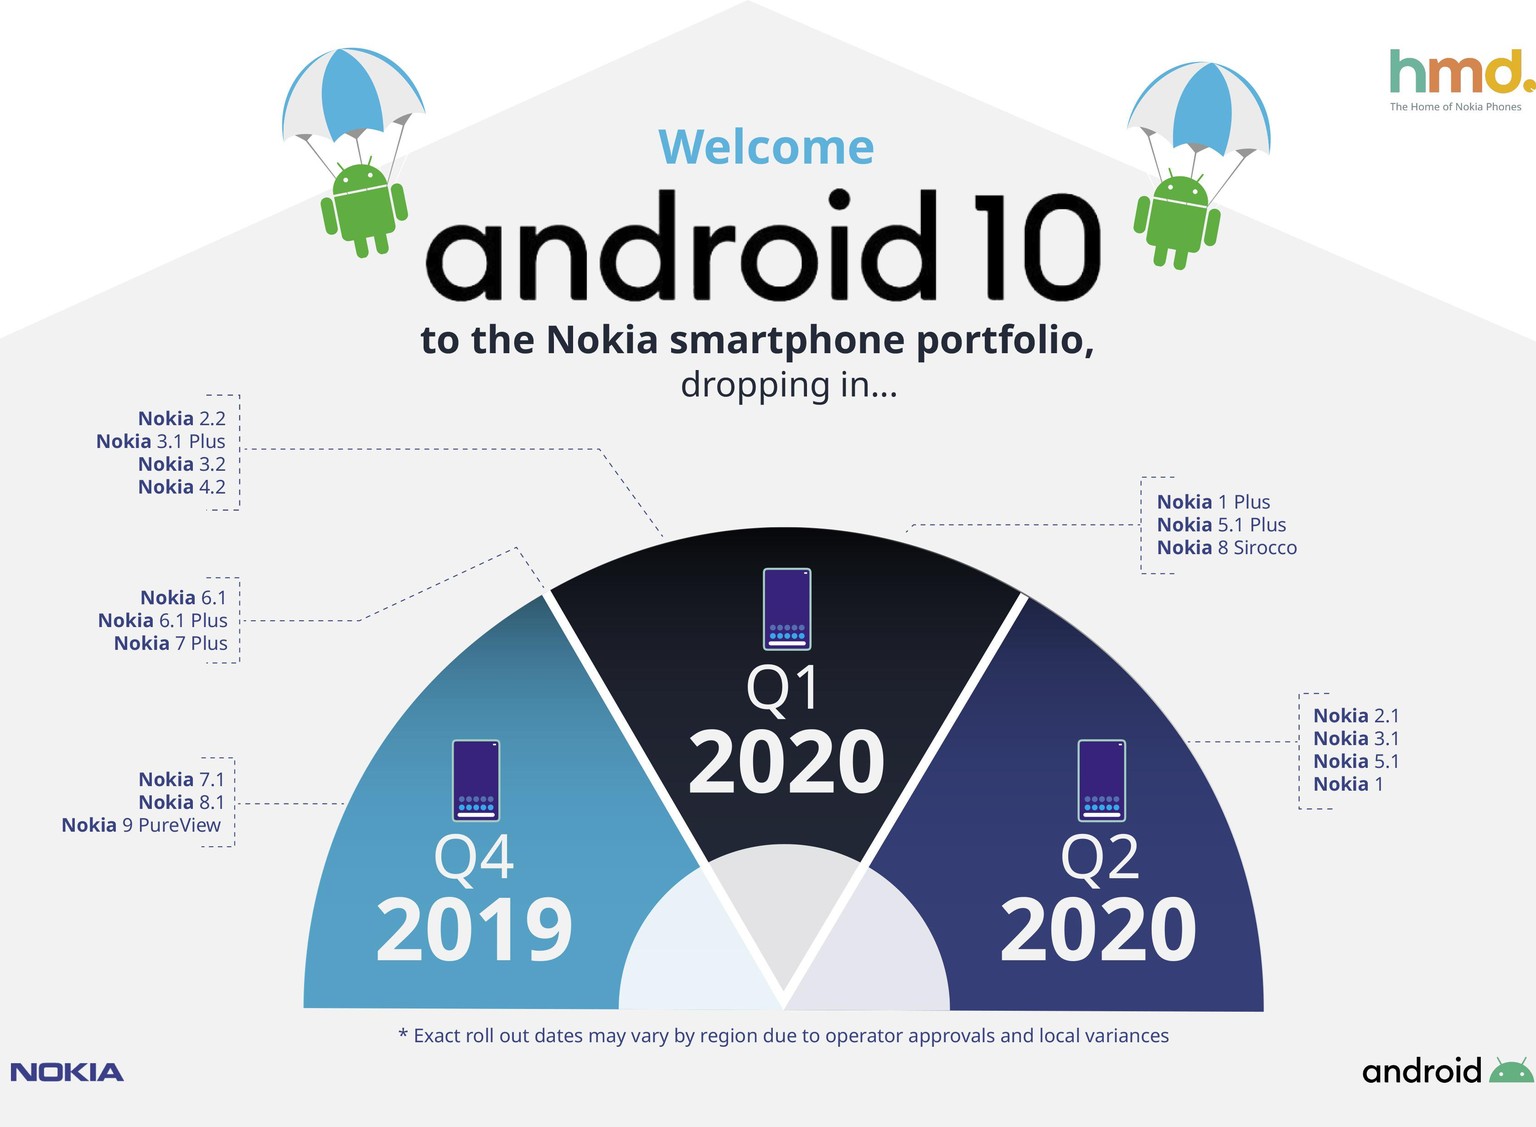 Die Nokia-Modelle 9, 8.1 und 7.1 erhalten Android 10 zuerst.